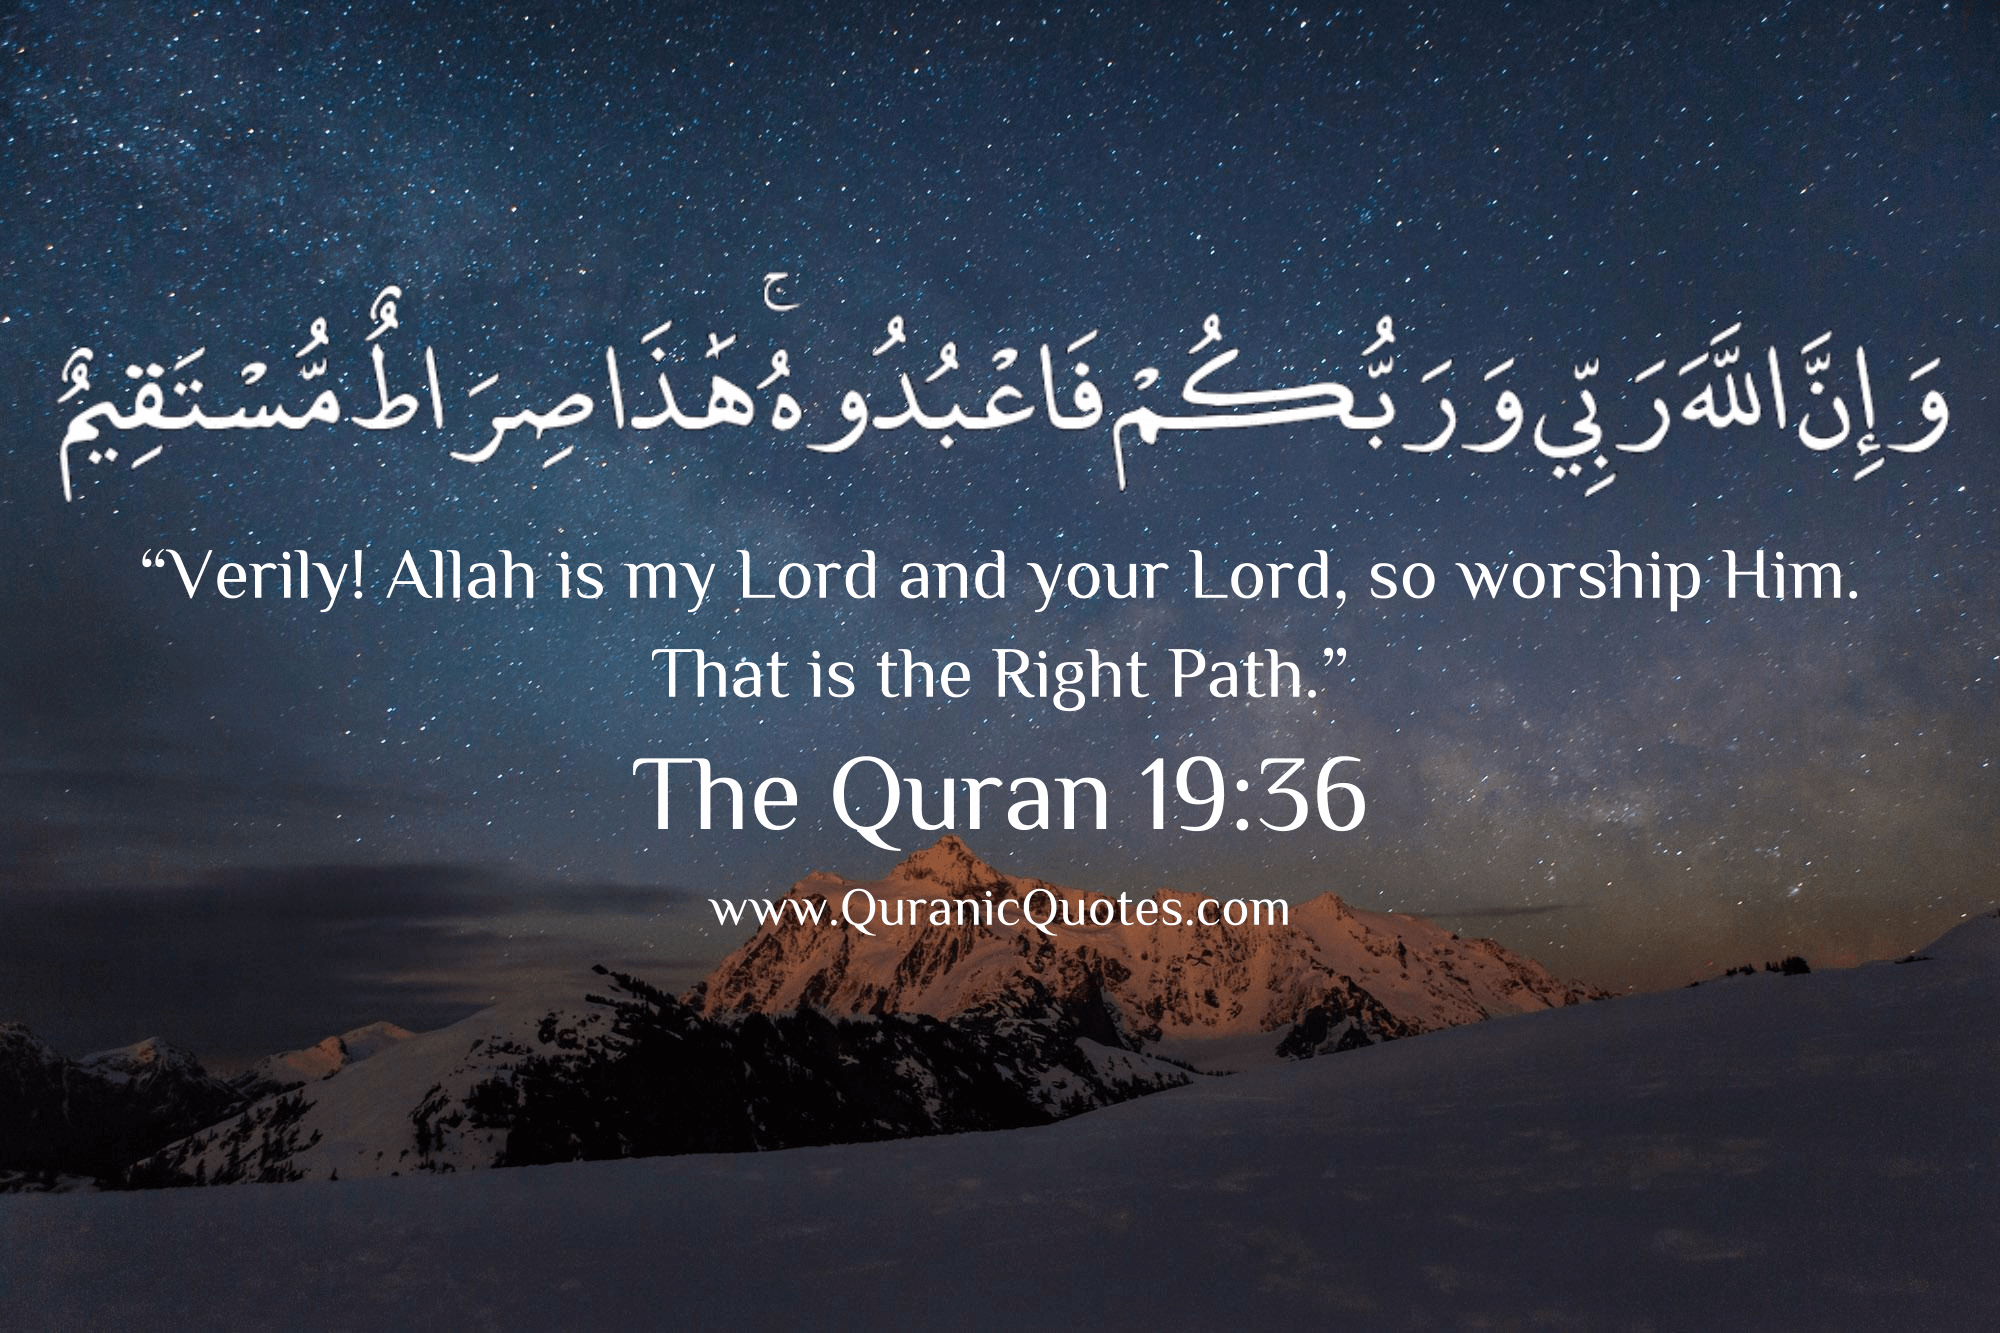 quran verses wallpaper,text,sky,font,night,space